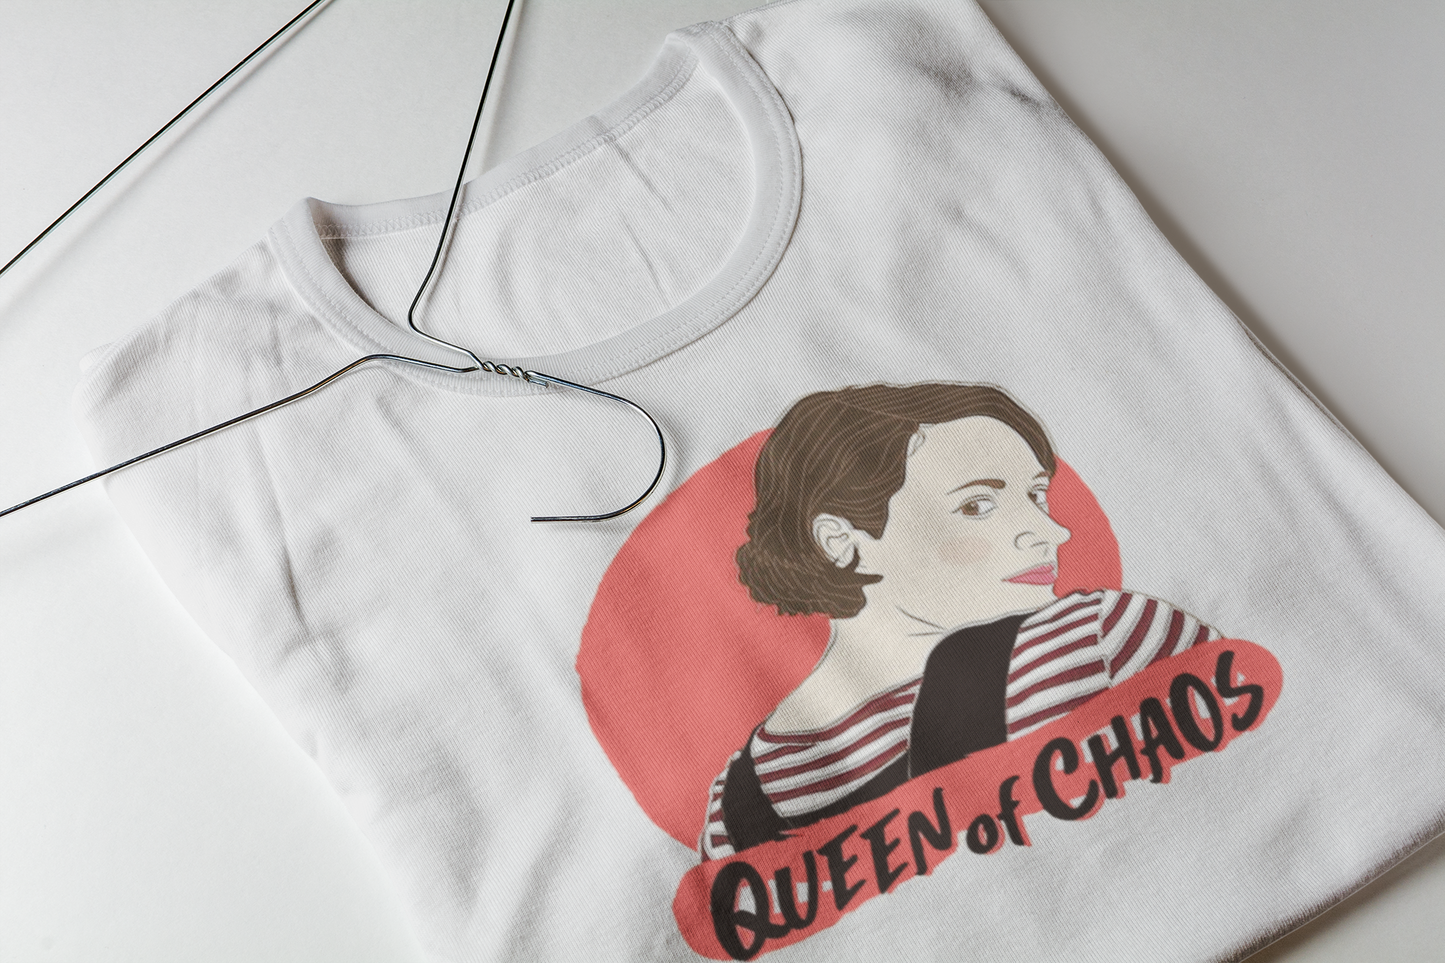 Camiseta "Queen of Caos" - Fleabag - Séries de TV